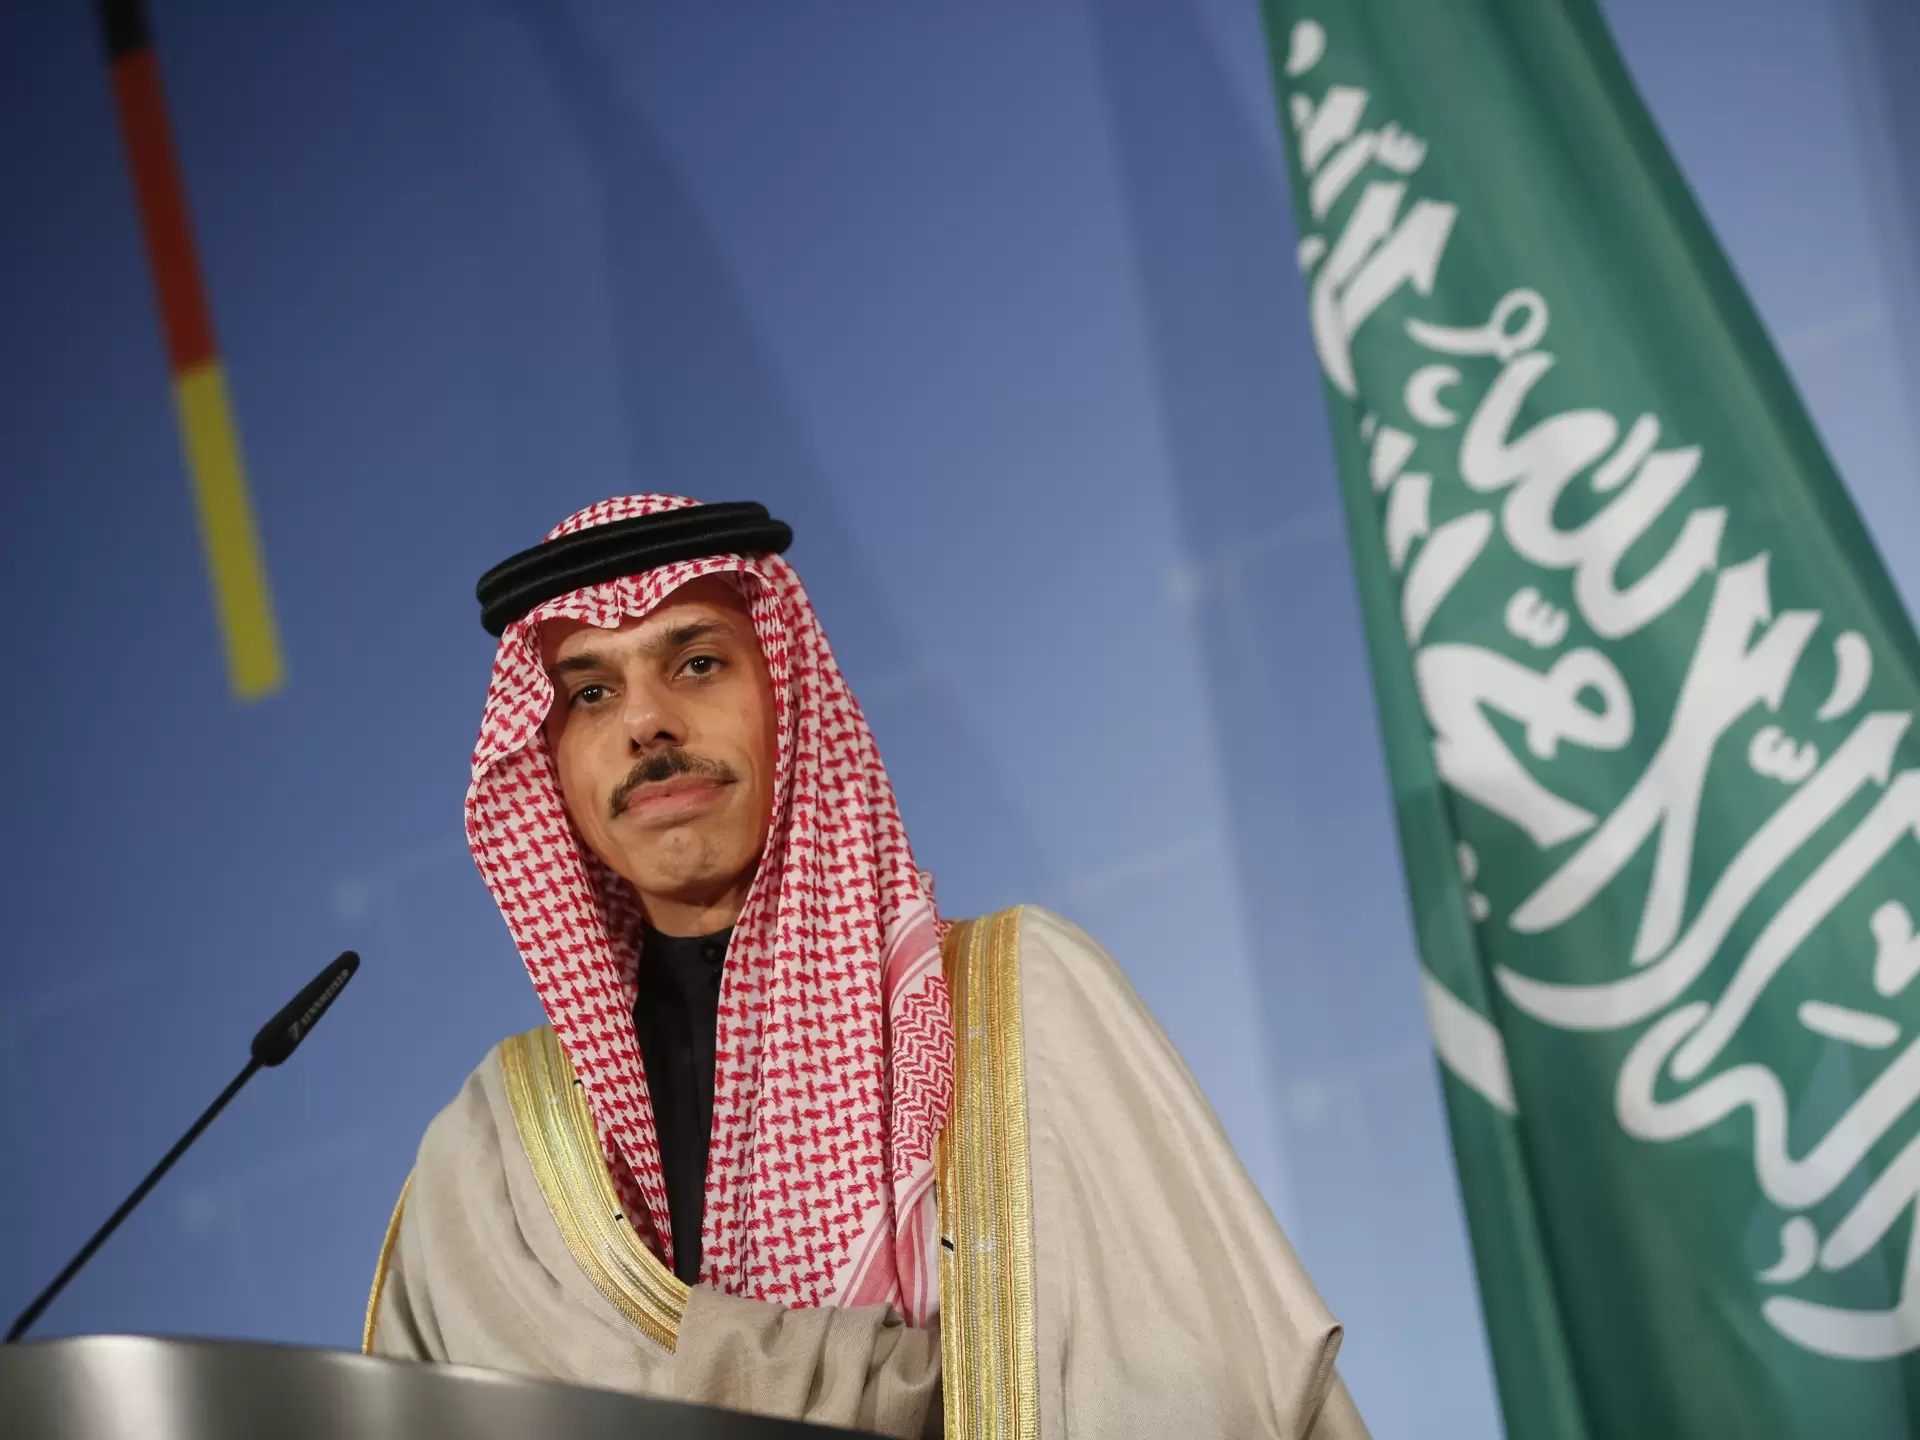 وزير الخارجية السعودي لـ "الشرق الأوسط": الاتفاق الأخير مع إيران لا يعني حلّ جميع الخلافات